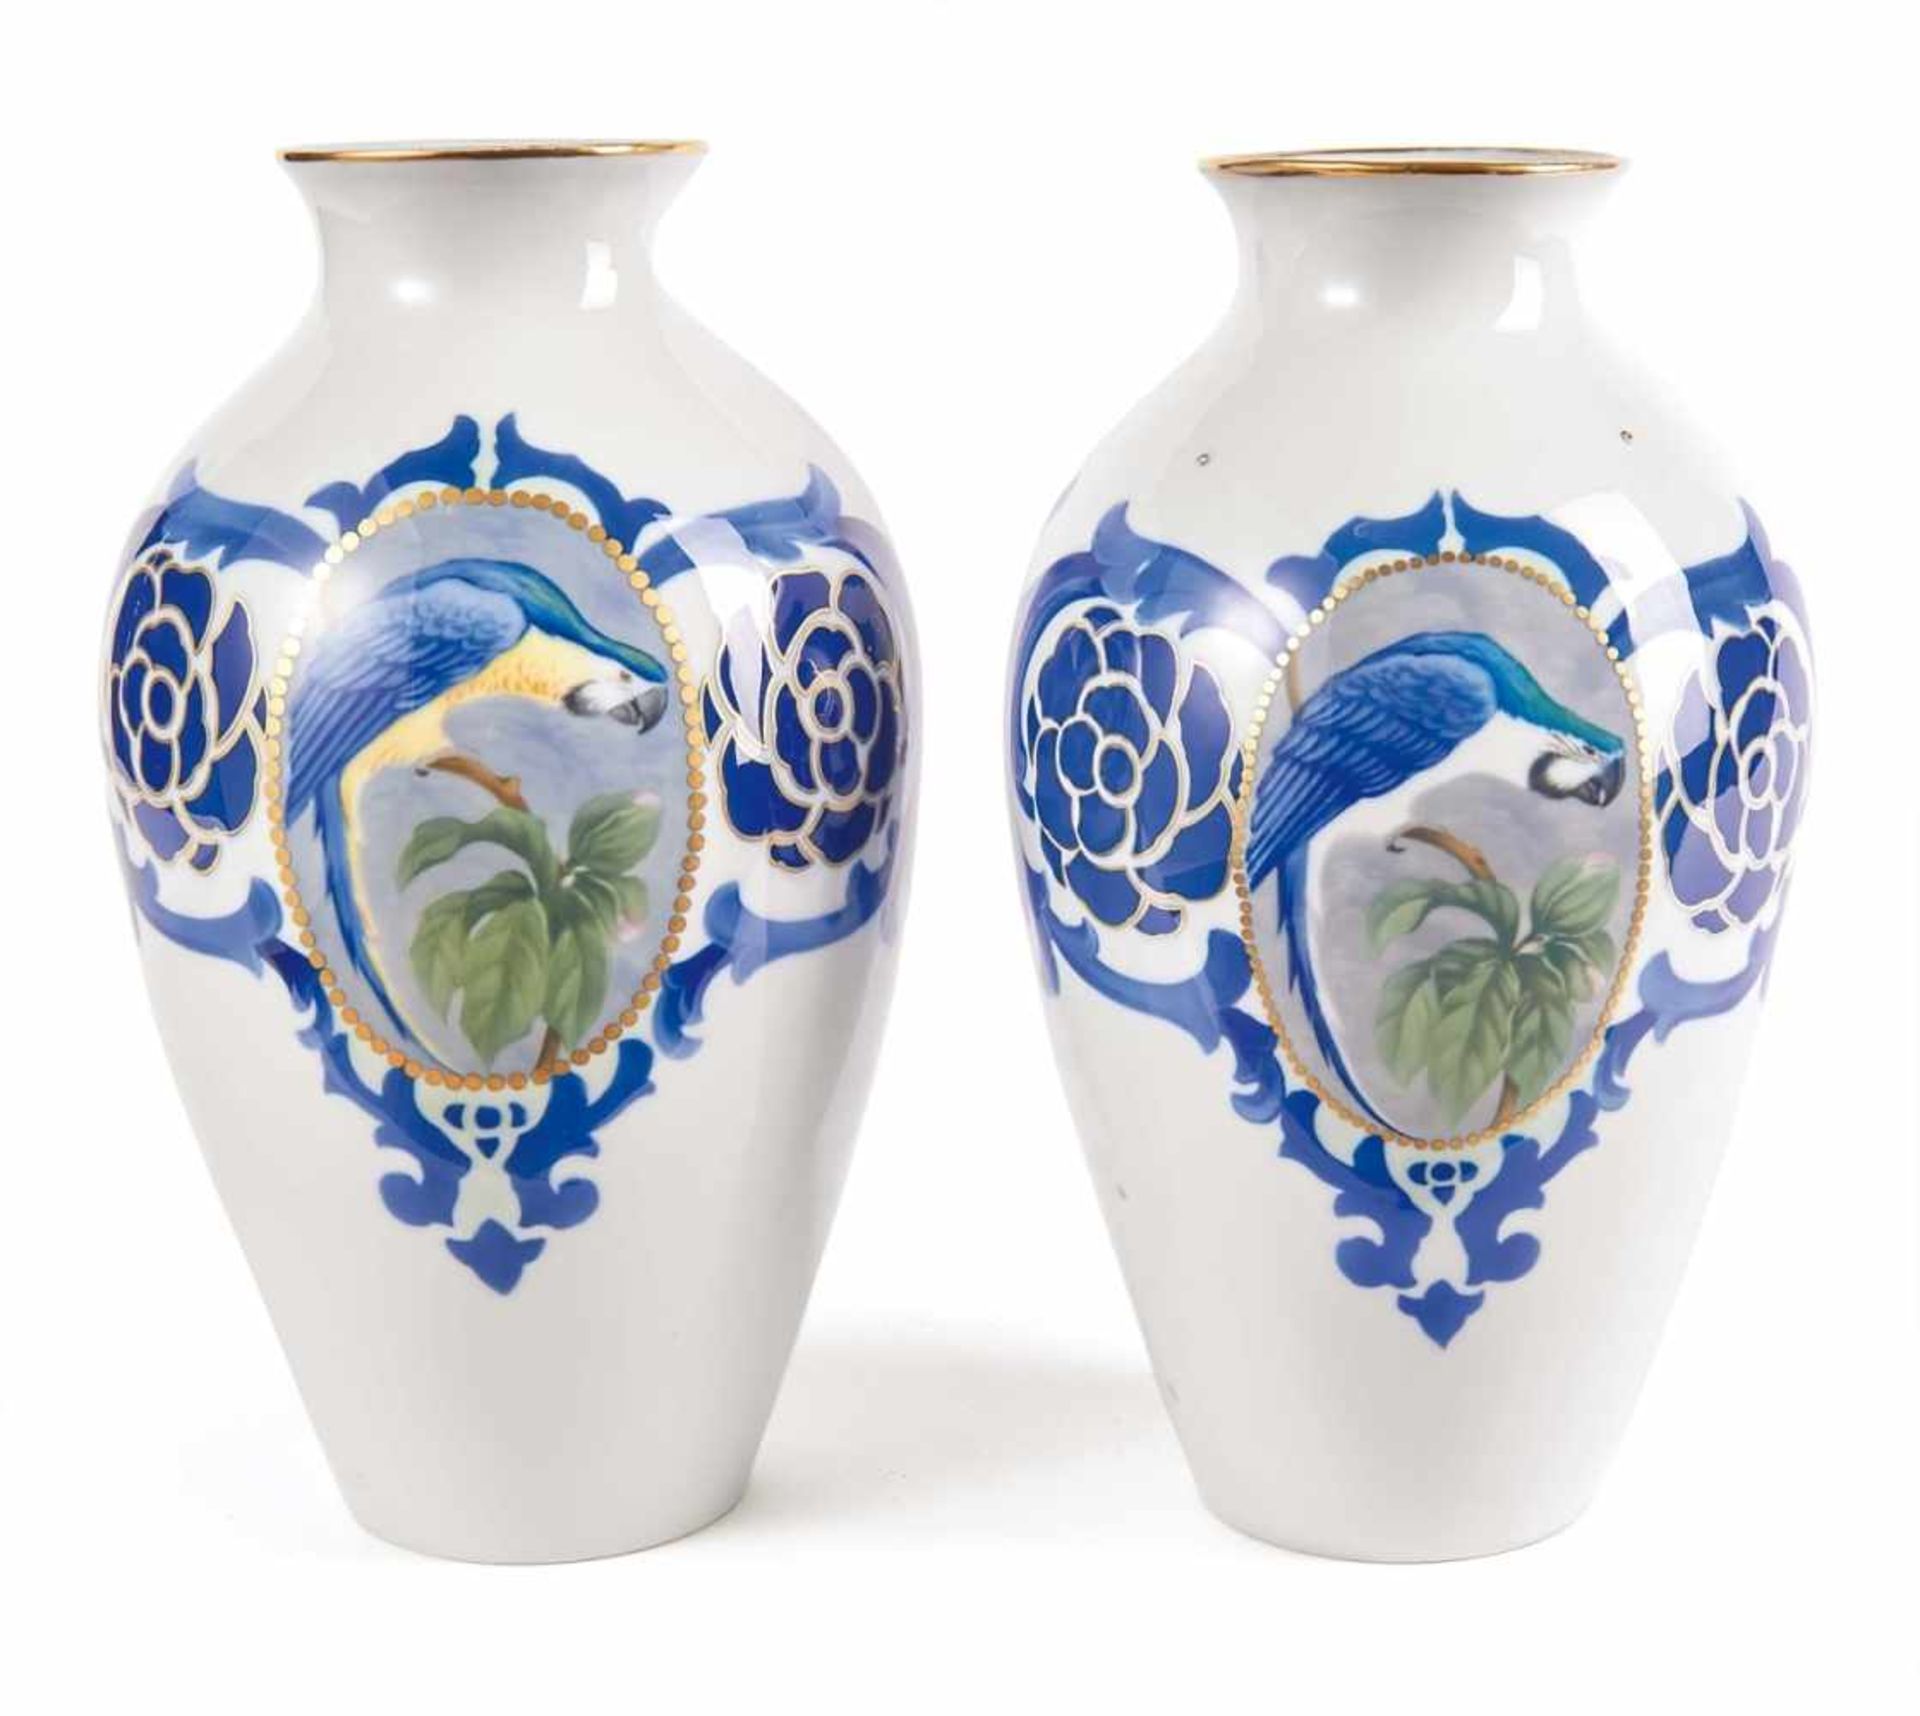 Elegant Pair of Art Nouveau Vases with Parrot Decoration